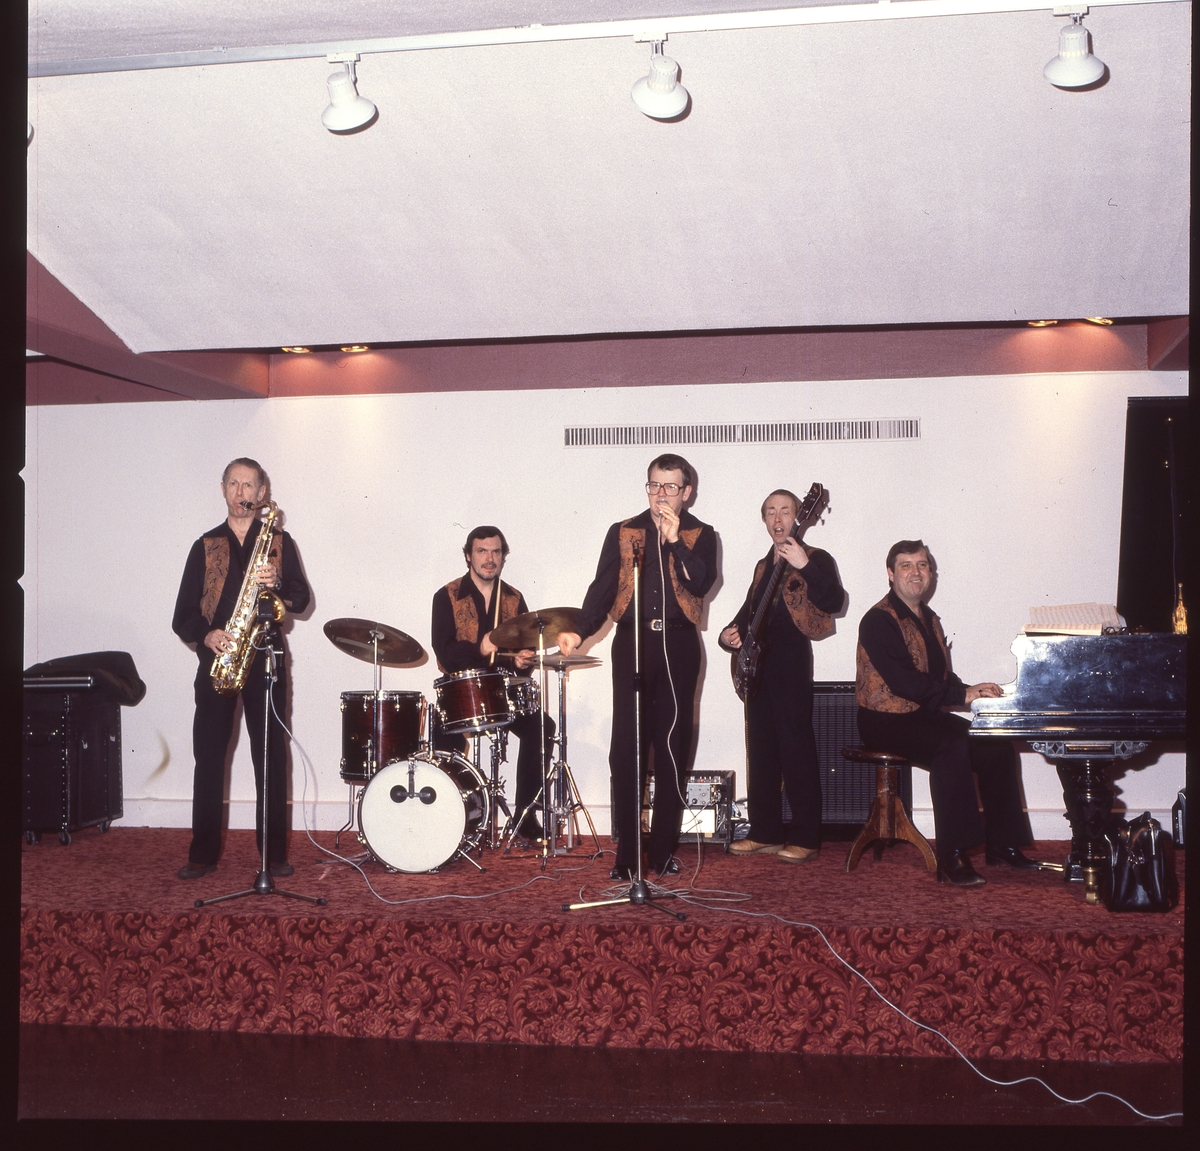 En positiv filmremsa på fyra bilder av ett dansband som spelar på en scen.